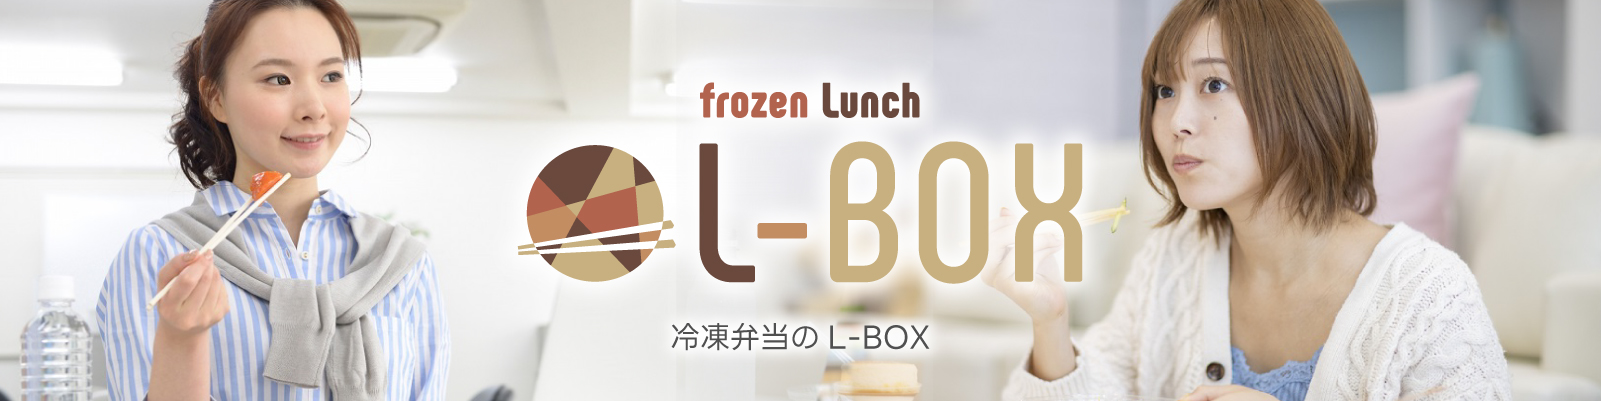 冷凍弁当のL-BOX｜無人型社員食堂のオフィスL-BOX